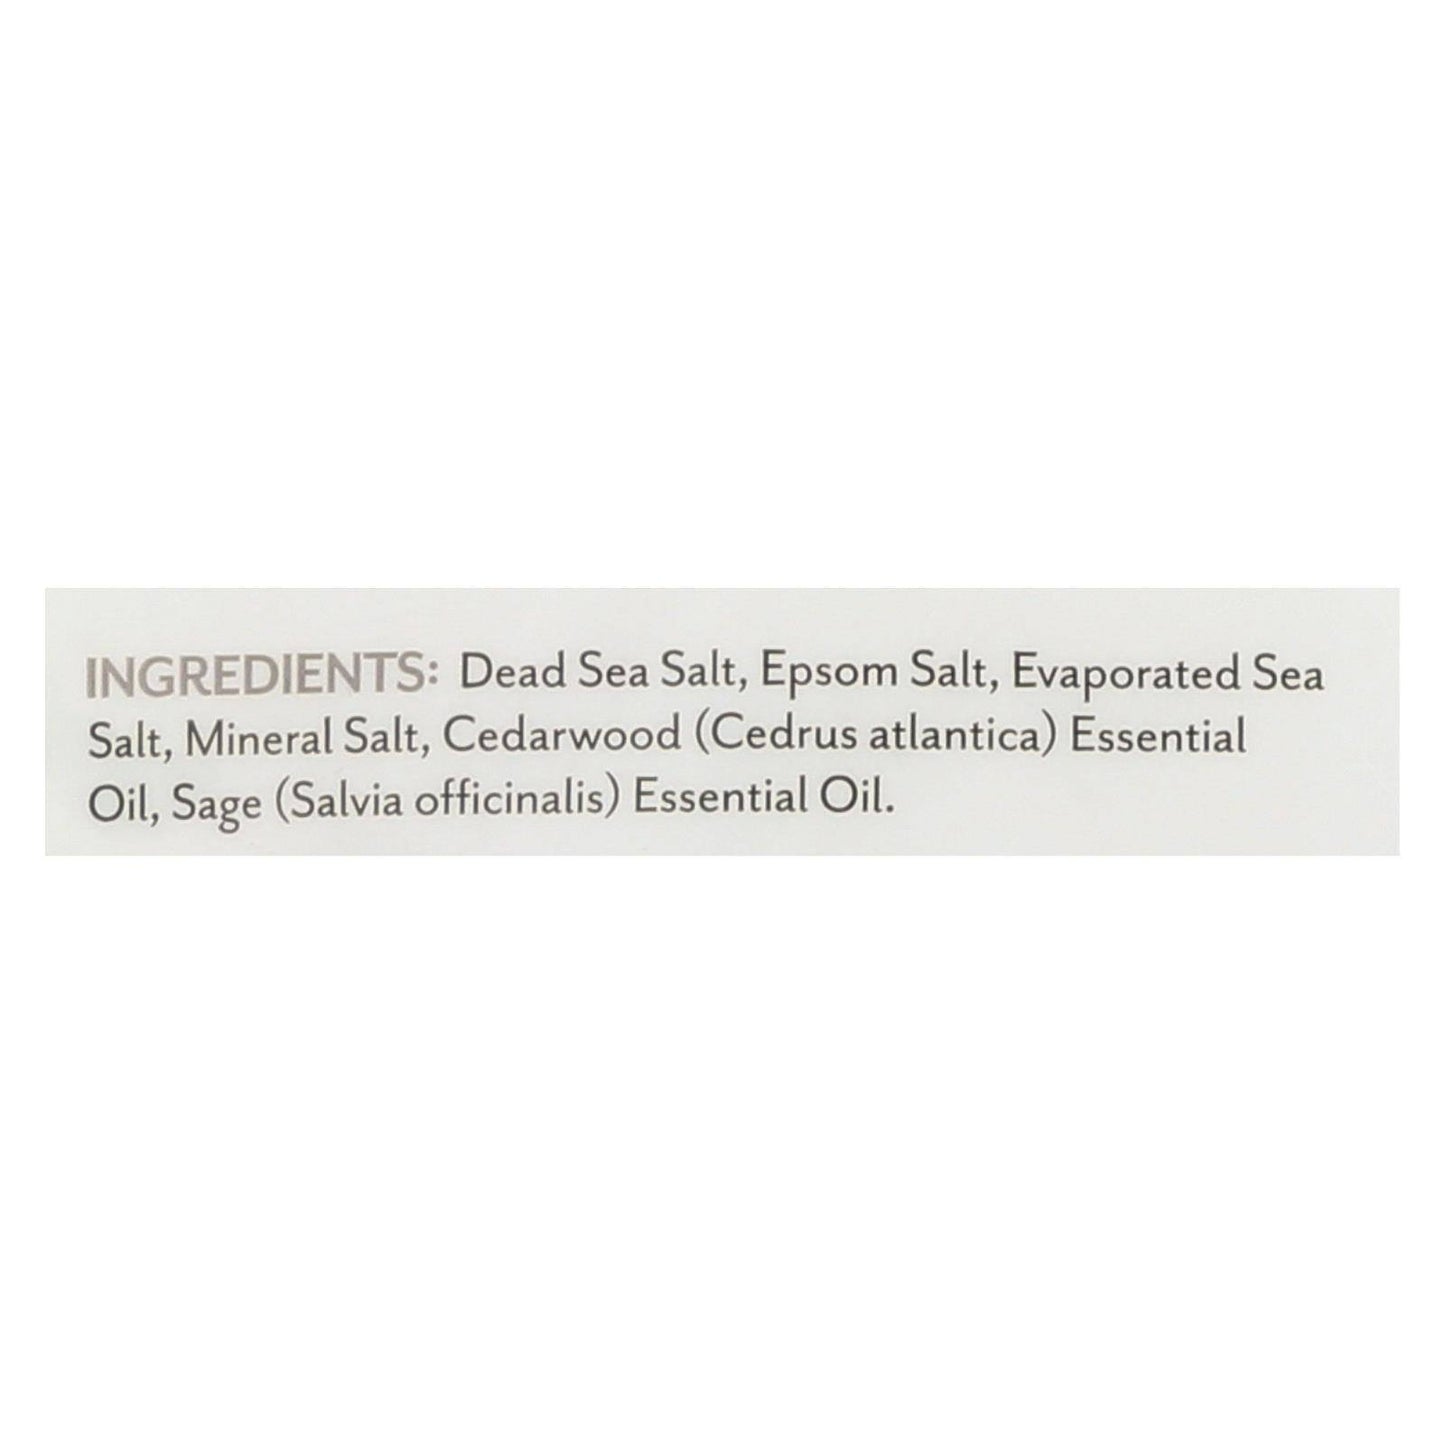 Bath Salts - Cedar Sage